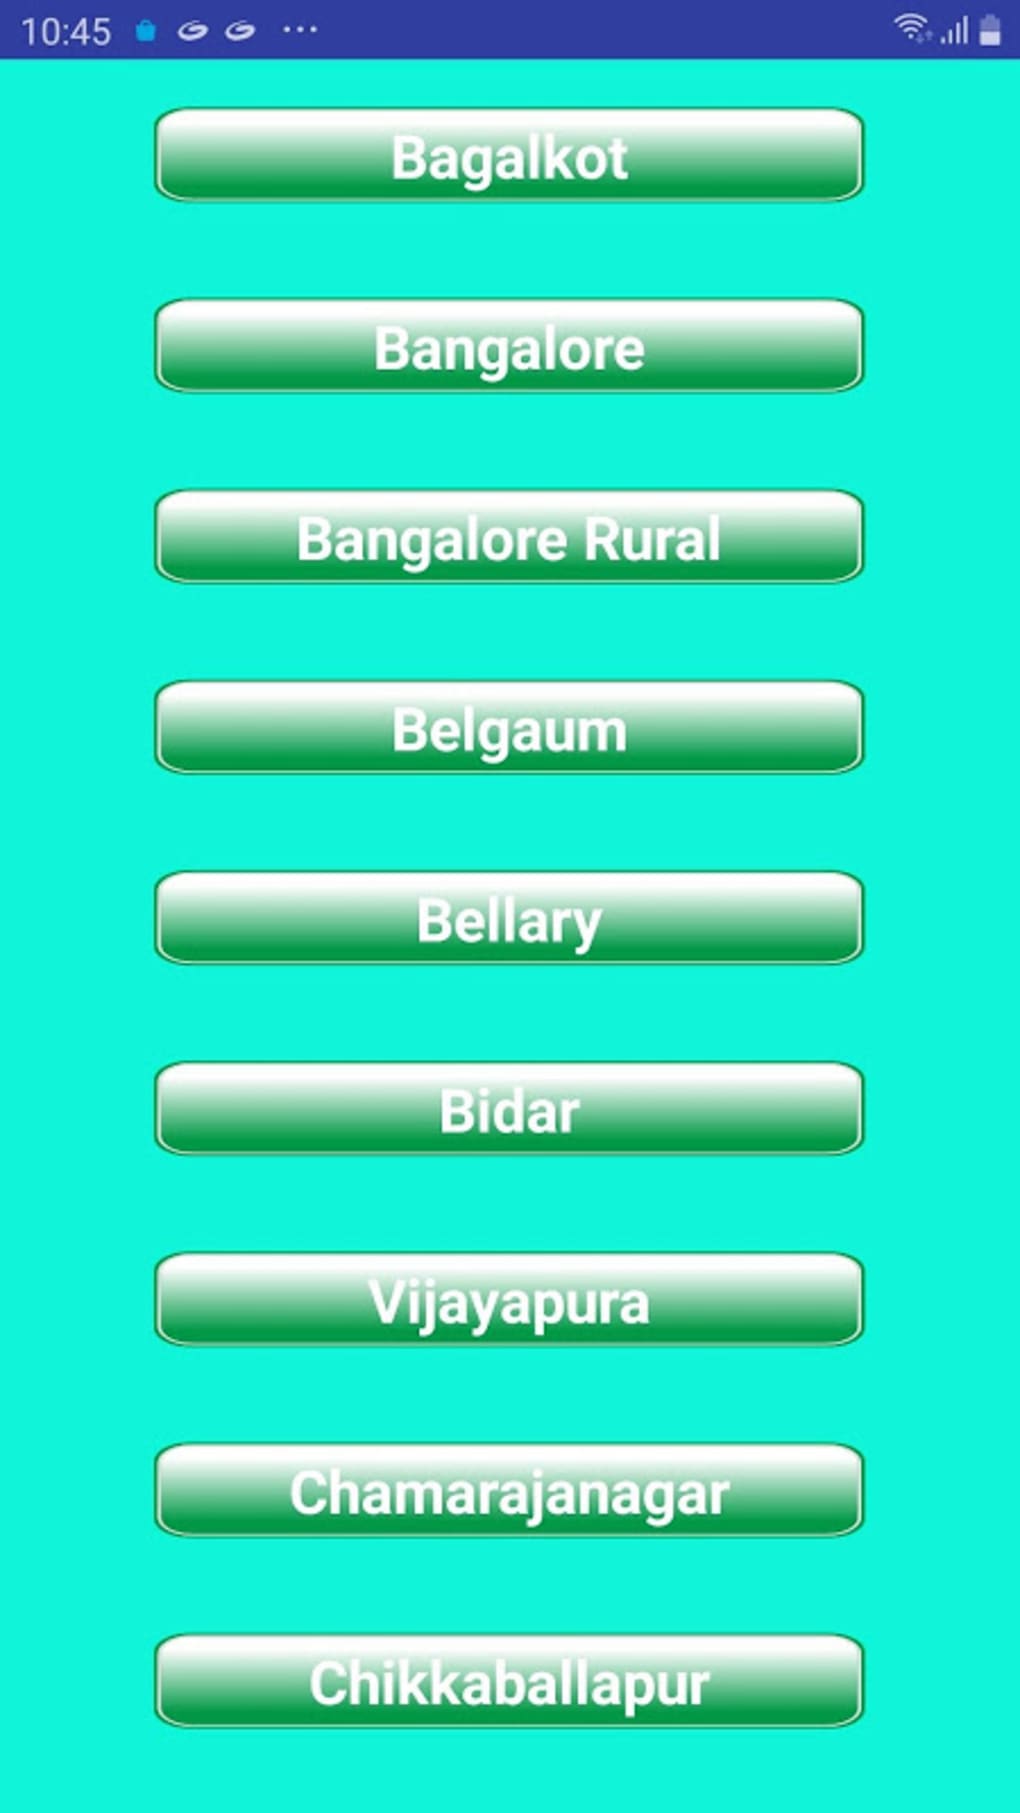 Bhoomi Karnataka - Everything About Karnataka Land Record 101